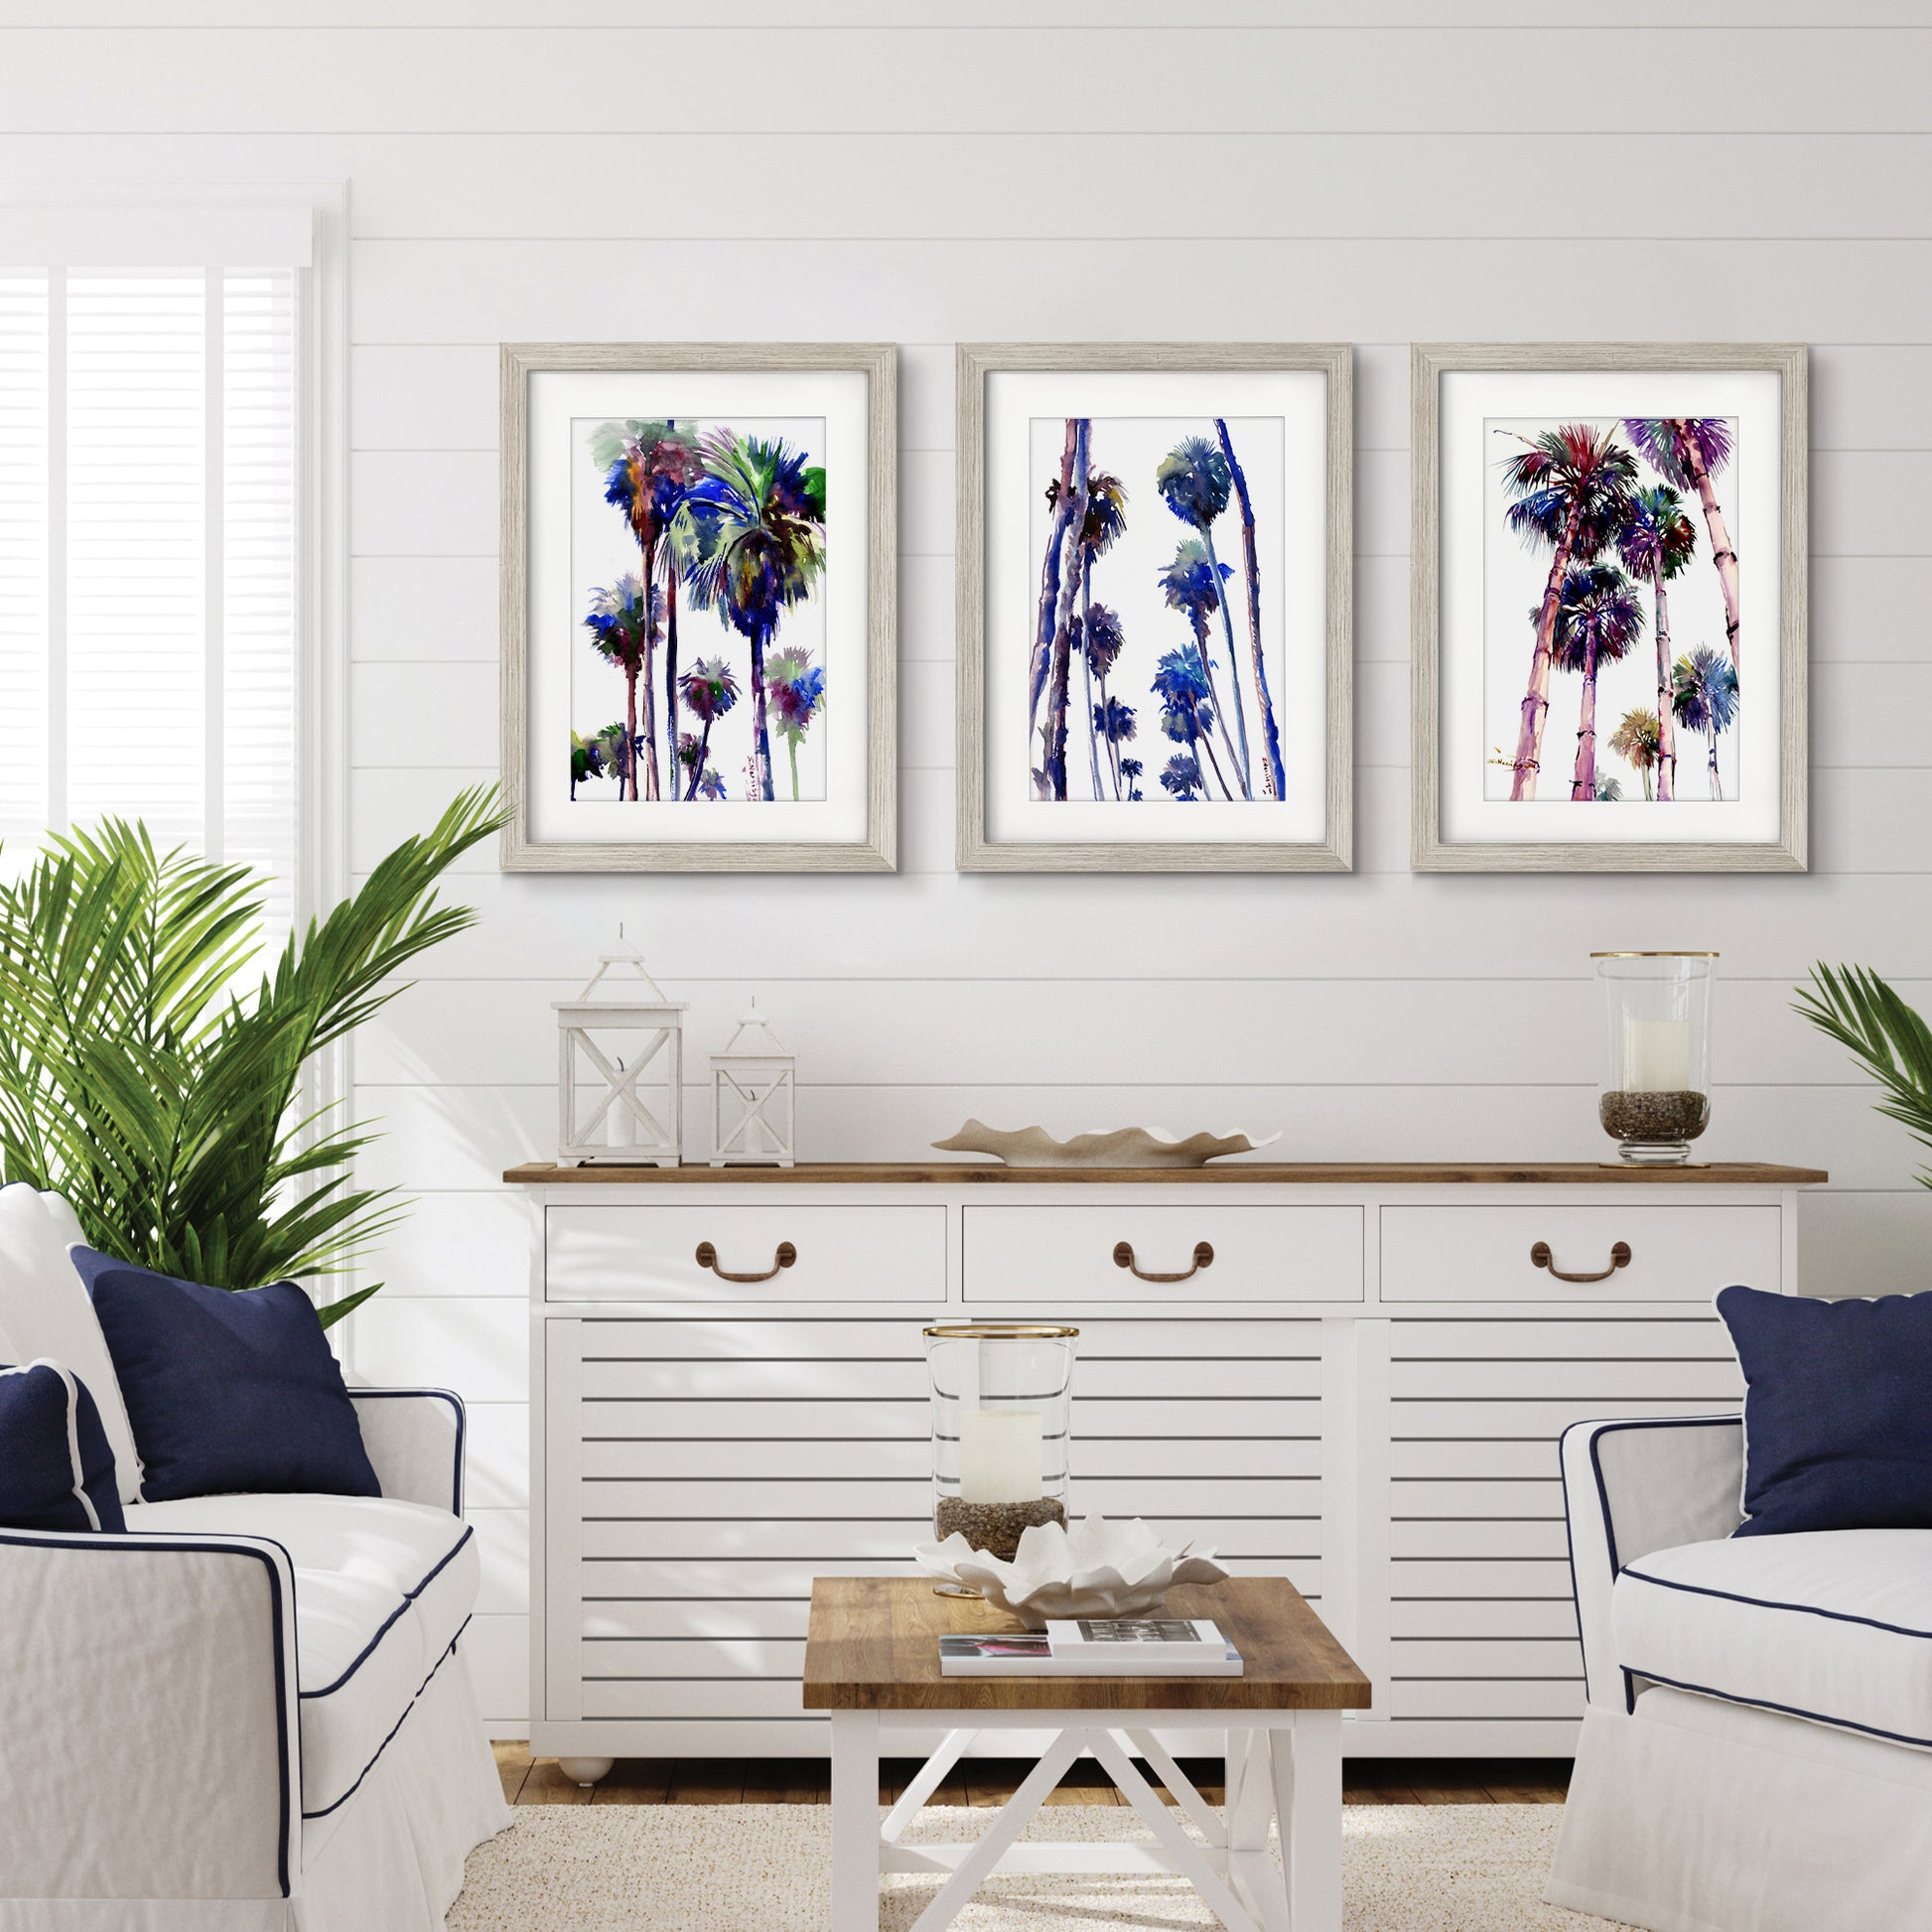 Purple Palms by Suren Nersisyan - 3 Piece Gallery Framed Print Art Set